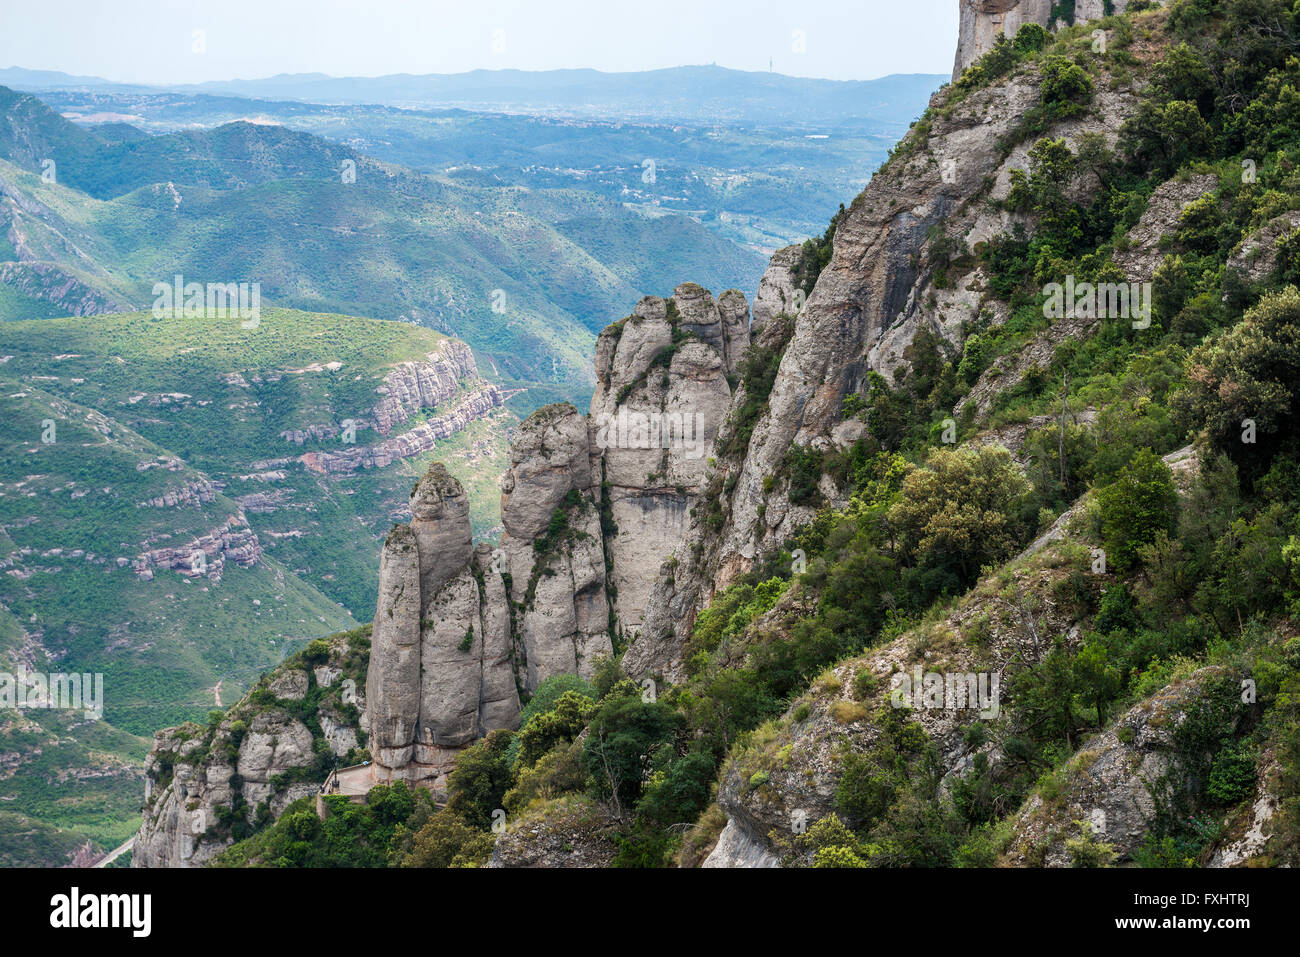 Vue aérienne de l'abbaye bénédictine Santa Maria de Montserrat sur la montagne de Montserrat à Monistrol de Montserrat, Espagne Banque D'Images